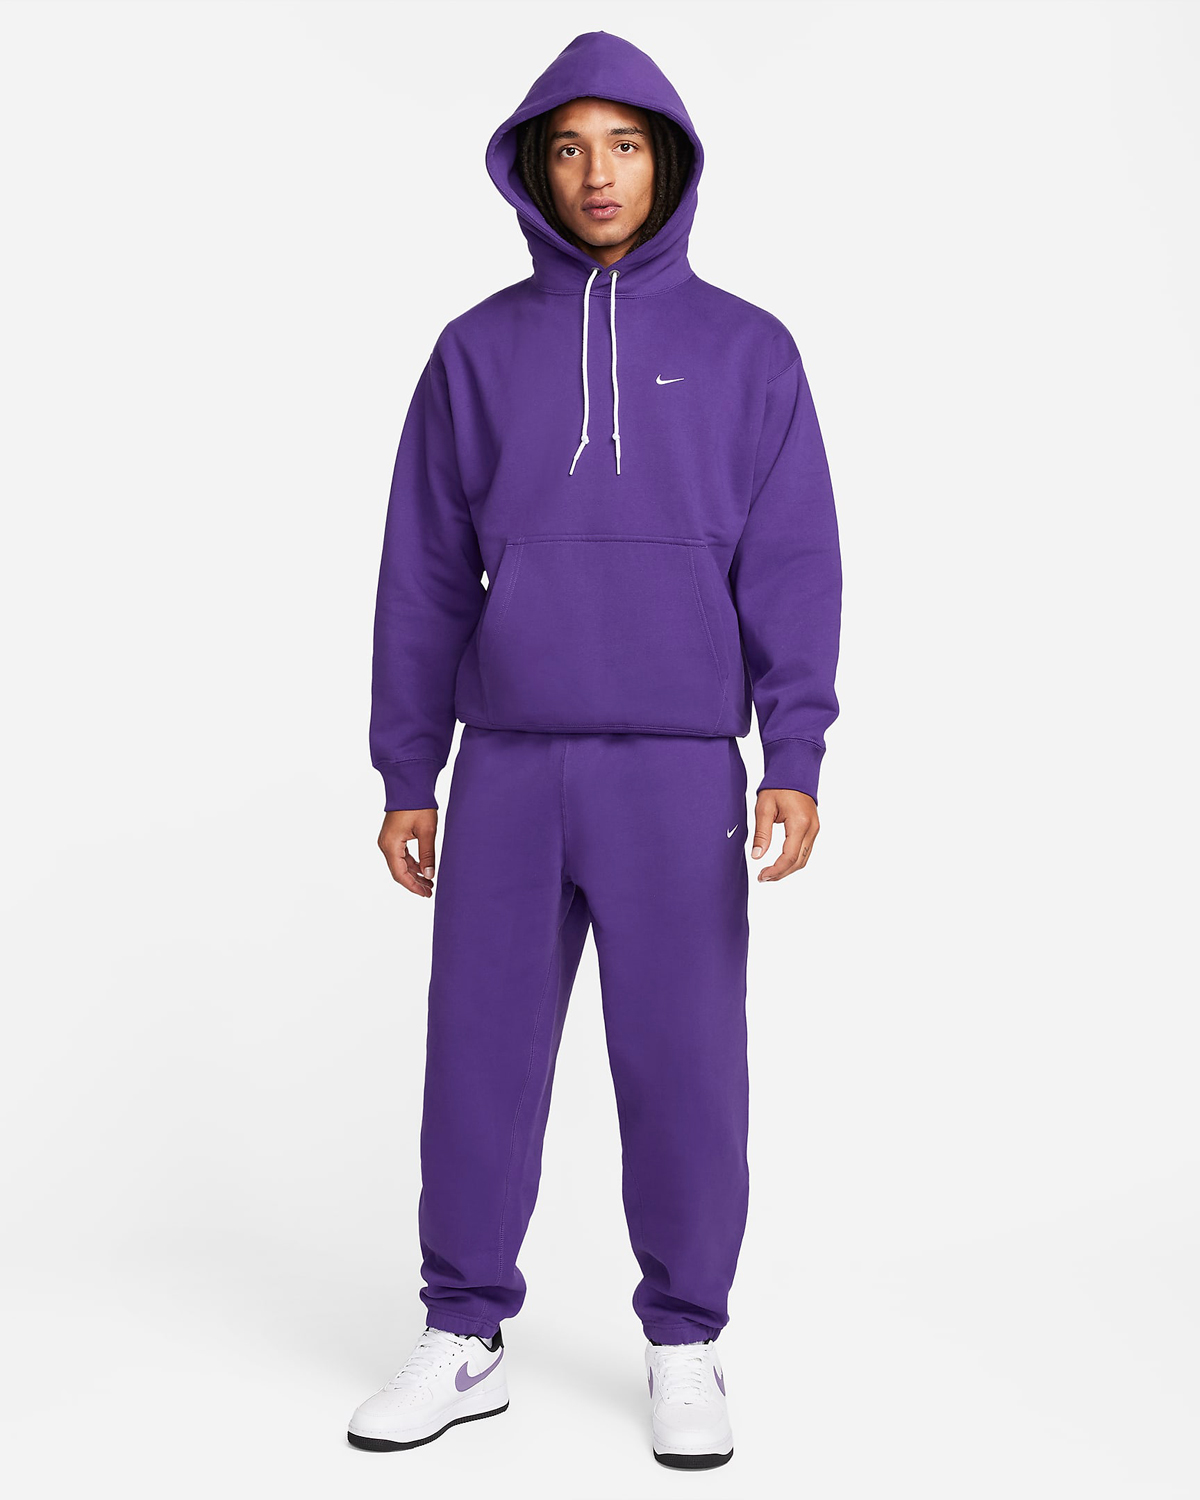 Nike-Solo-Swoosh-Fleece-Pullover-Hoodie-Field-Purple-Outfit